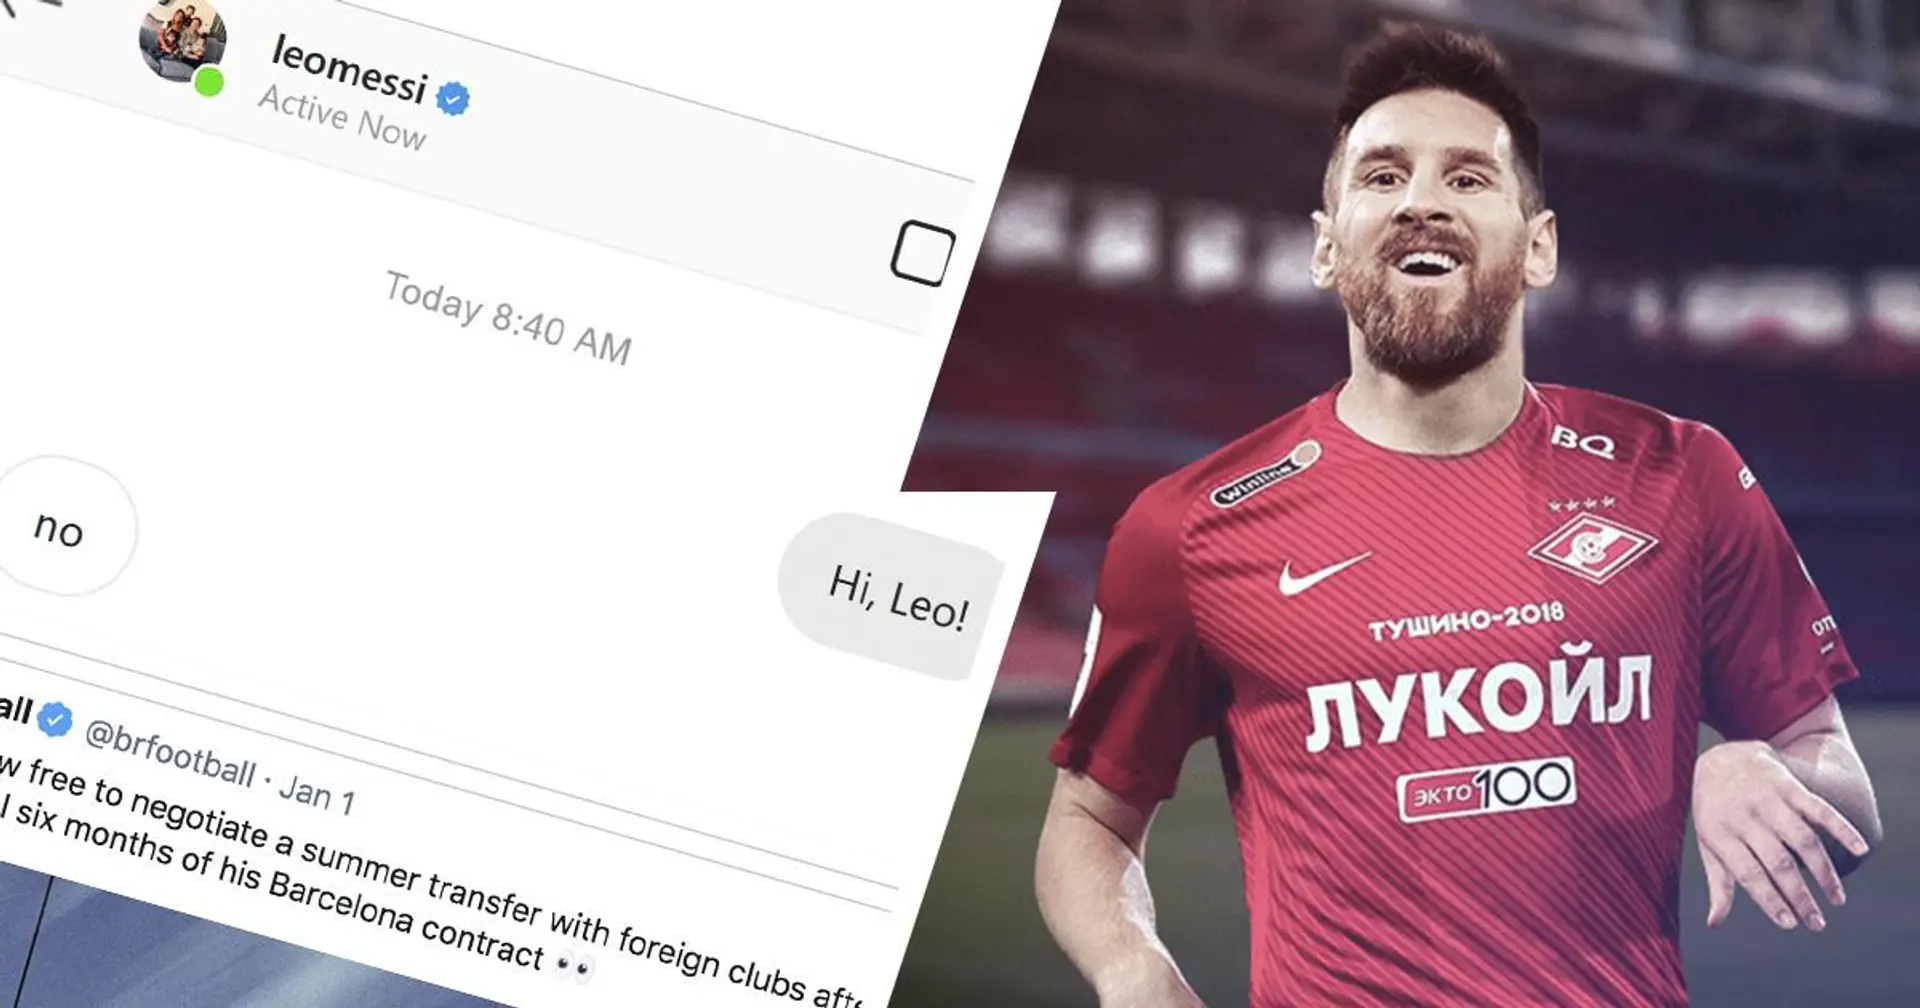 El Spartak de Moscú 'filtra' chat en Instagram con Messi mientras el argentino está libre para discutir el futuro con otros clubes